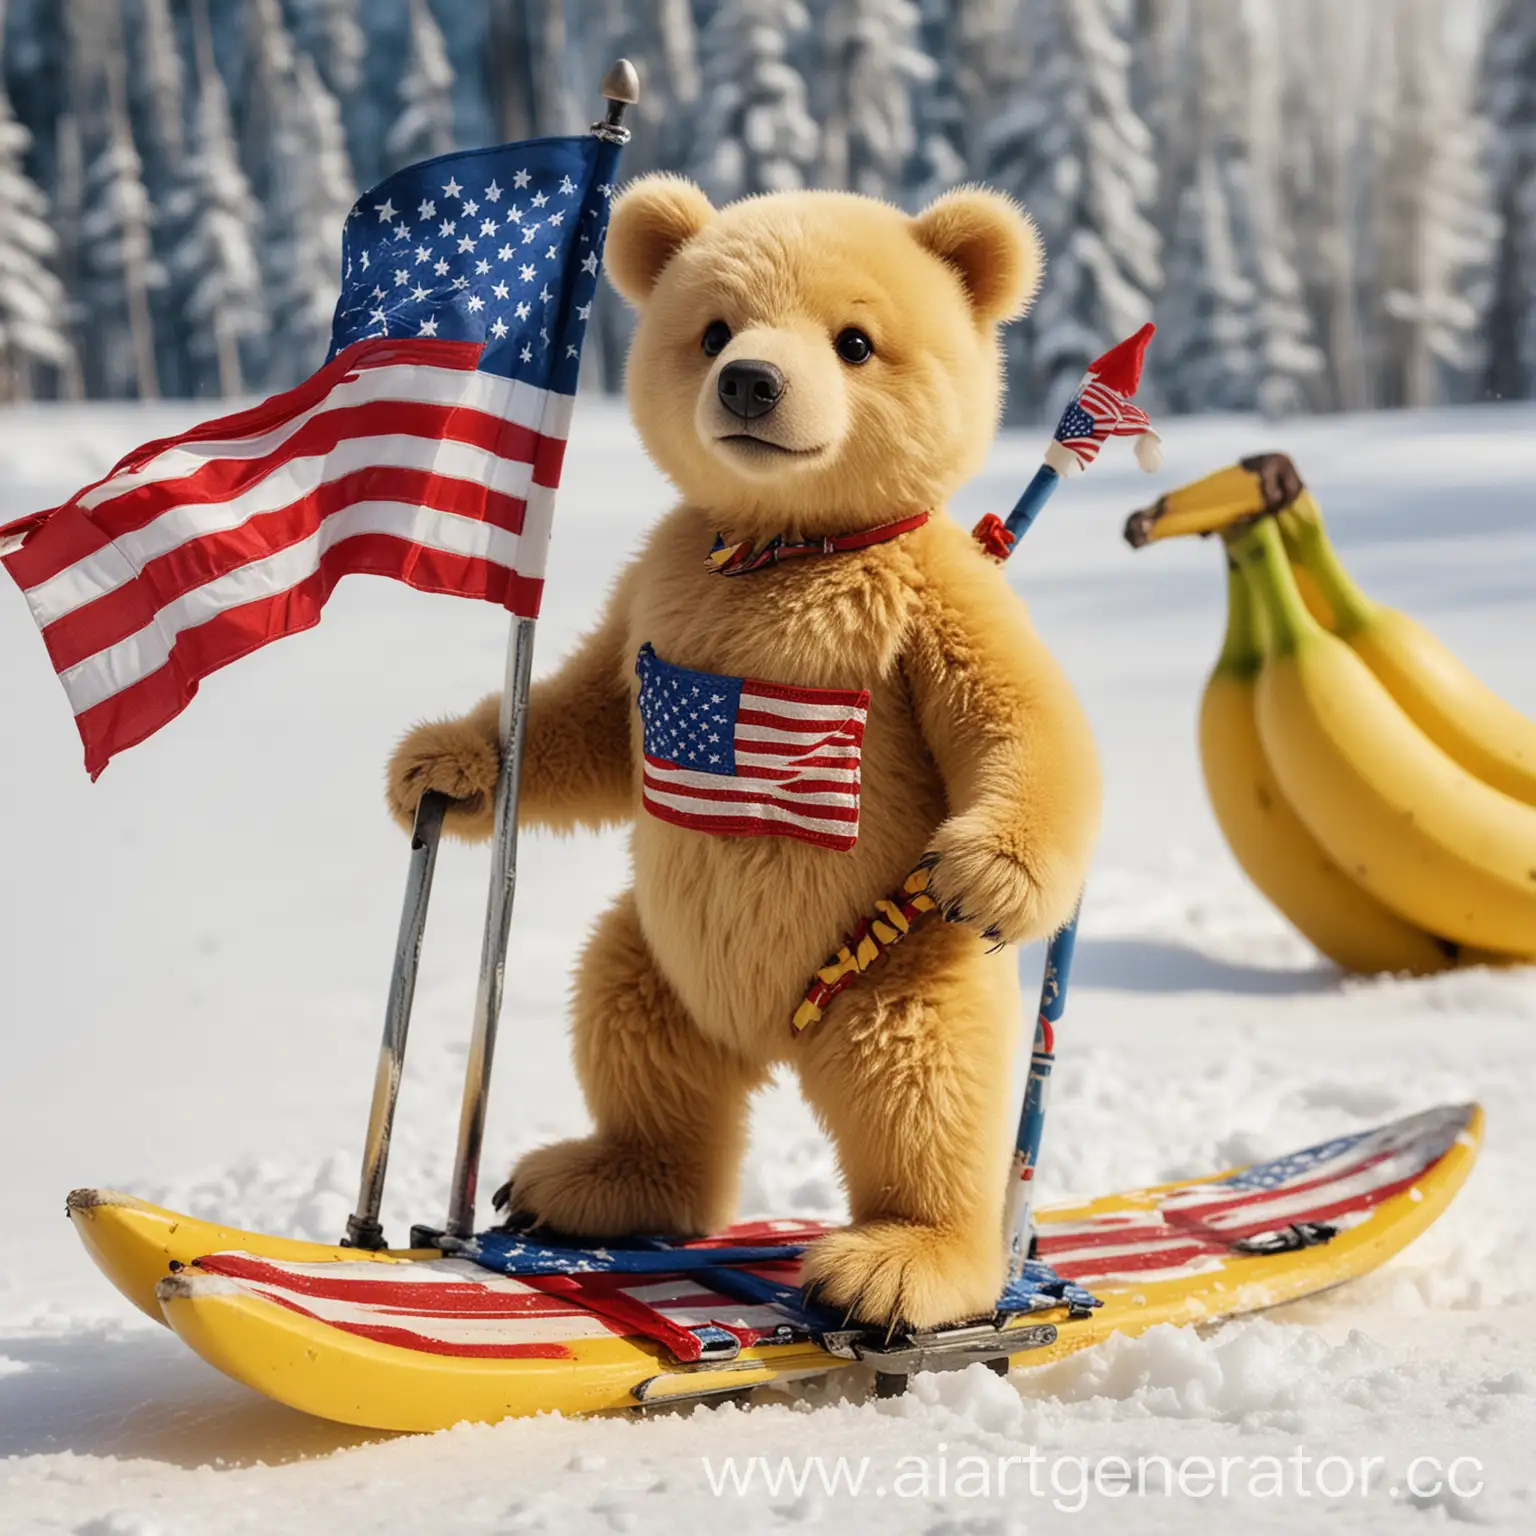 Медведь, желтого цвета, с маленьким носом,  в одной лапе американский флаг, во второй бананы, едет на лыжах.